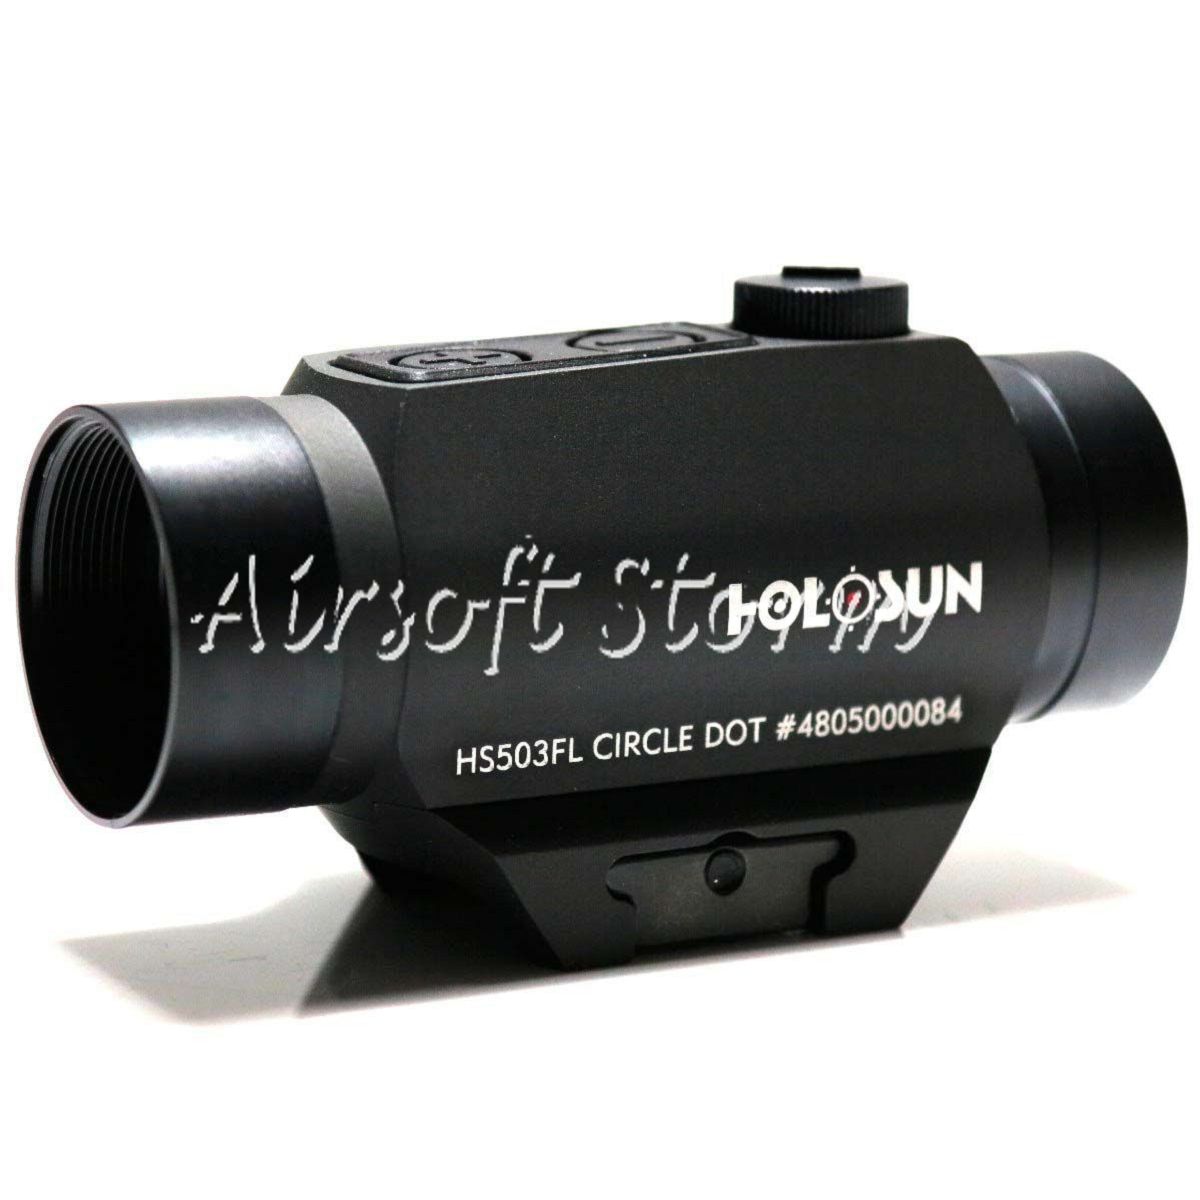 SWAT Gear Tactical Holosun PARALOW HS503FL Aluminum Circle Dot Sight